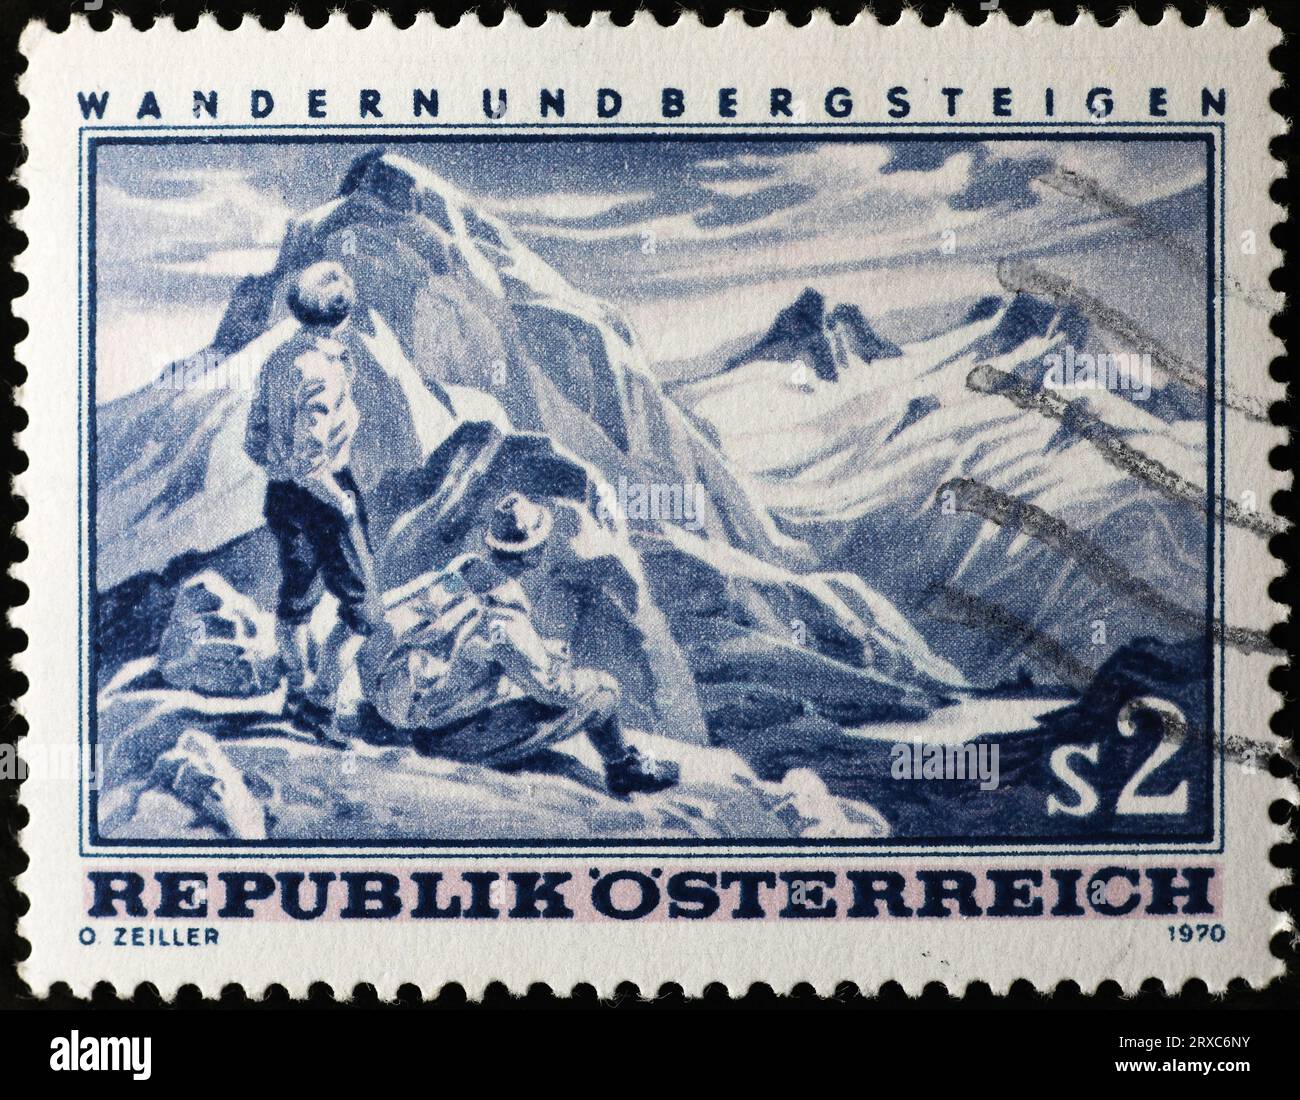 Wandern und Bergsteigen werden auf einem alten österreichischen Stempel gefeiert Stockfoto